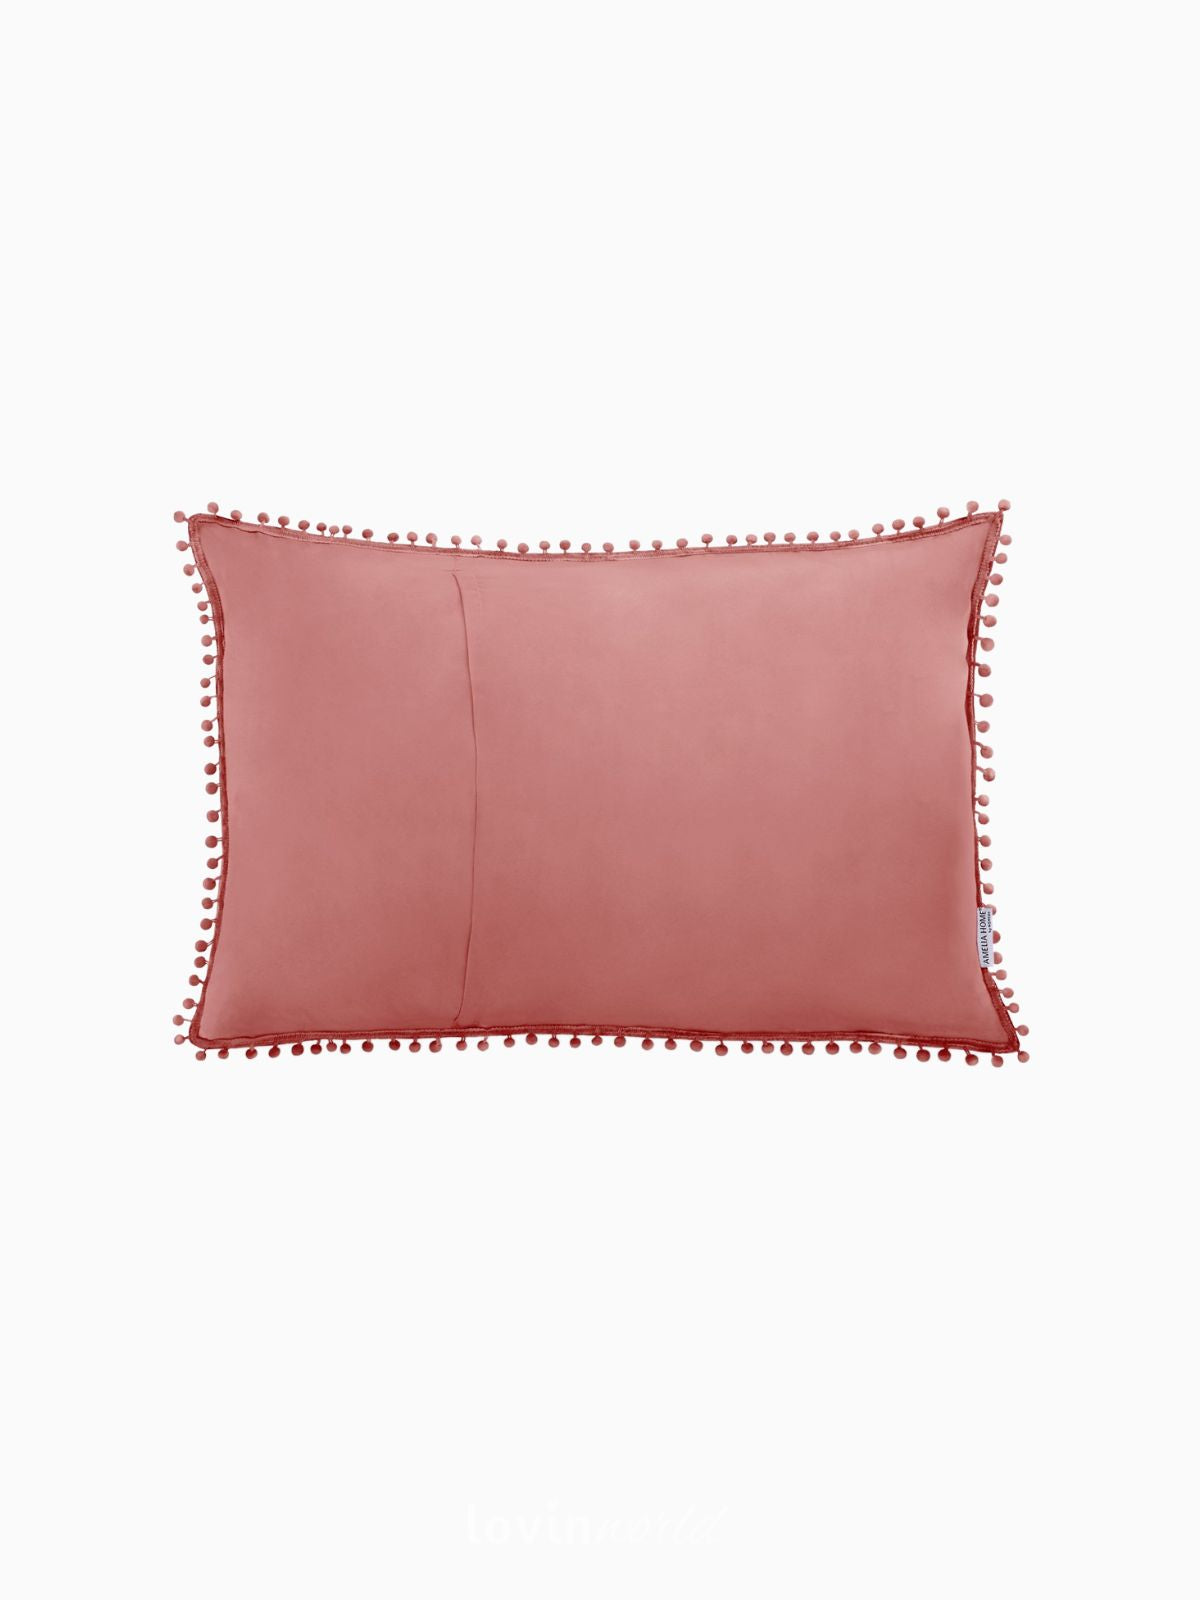 Cuscino decorativo Meadore in colore rosso 50x70 cm.-2